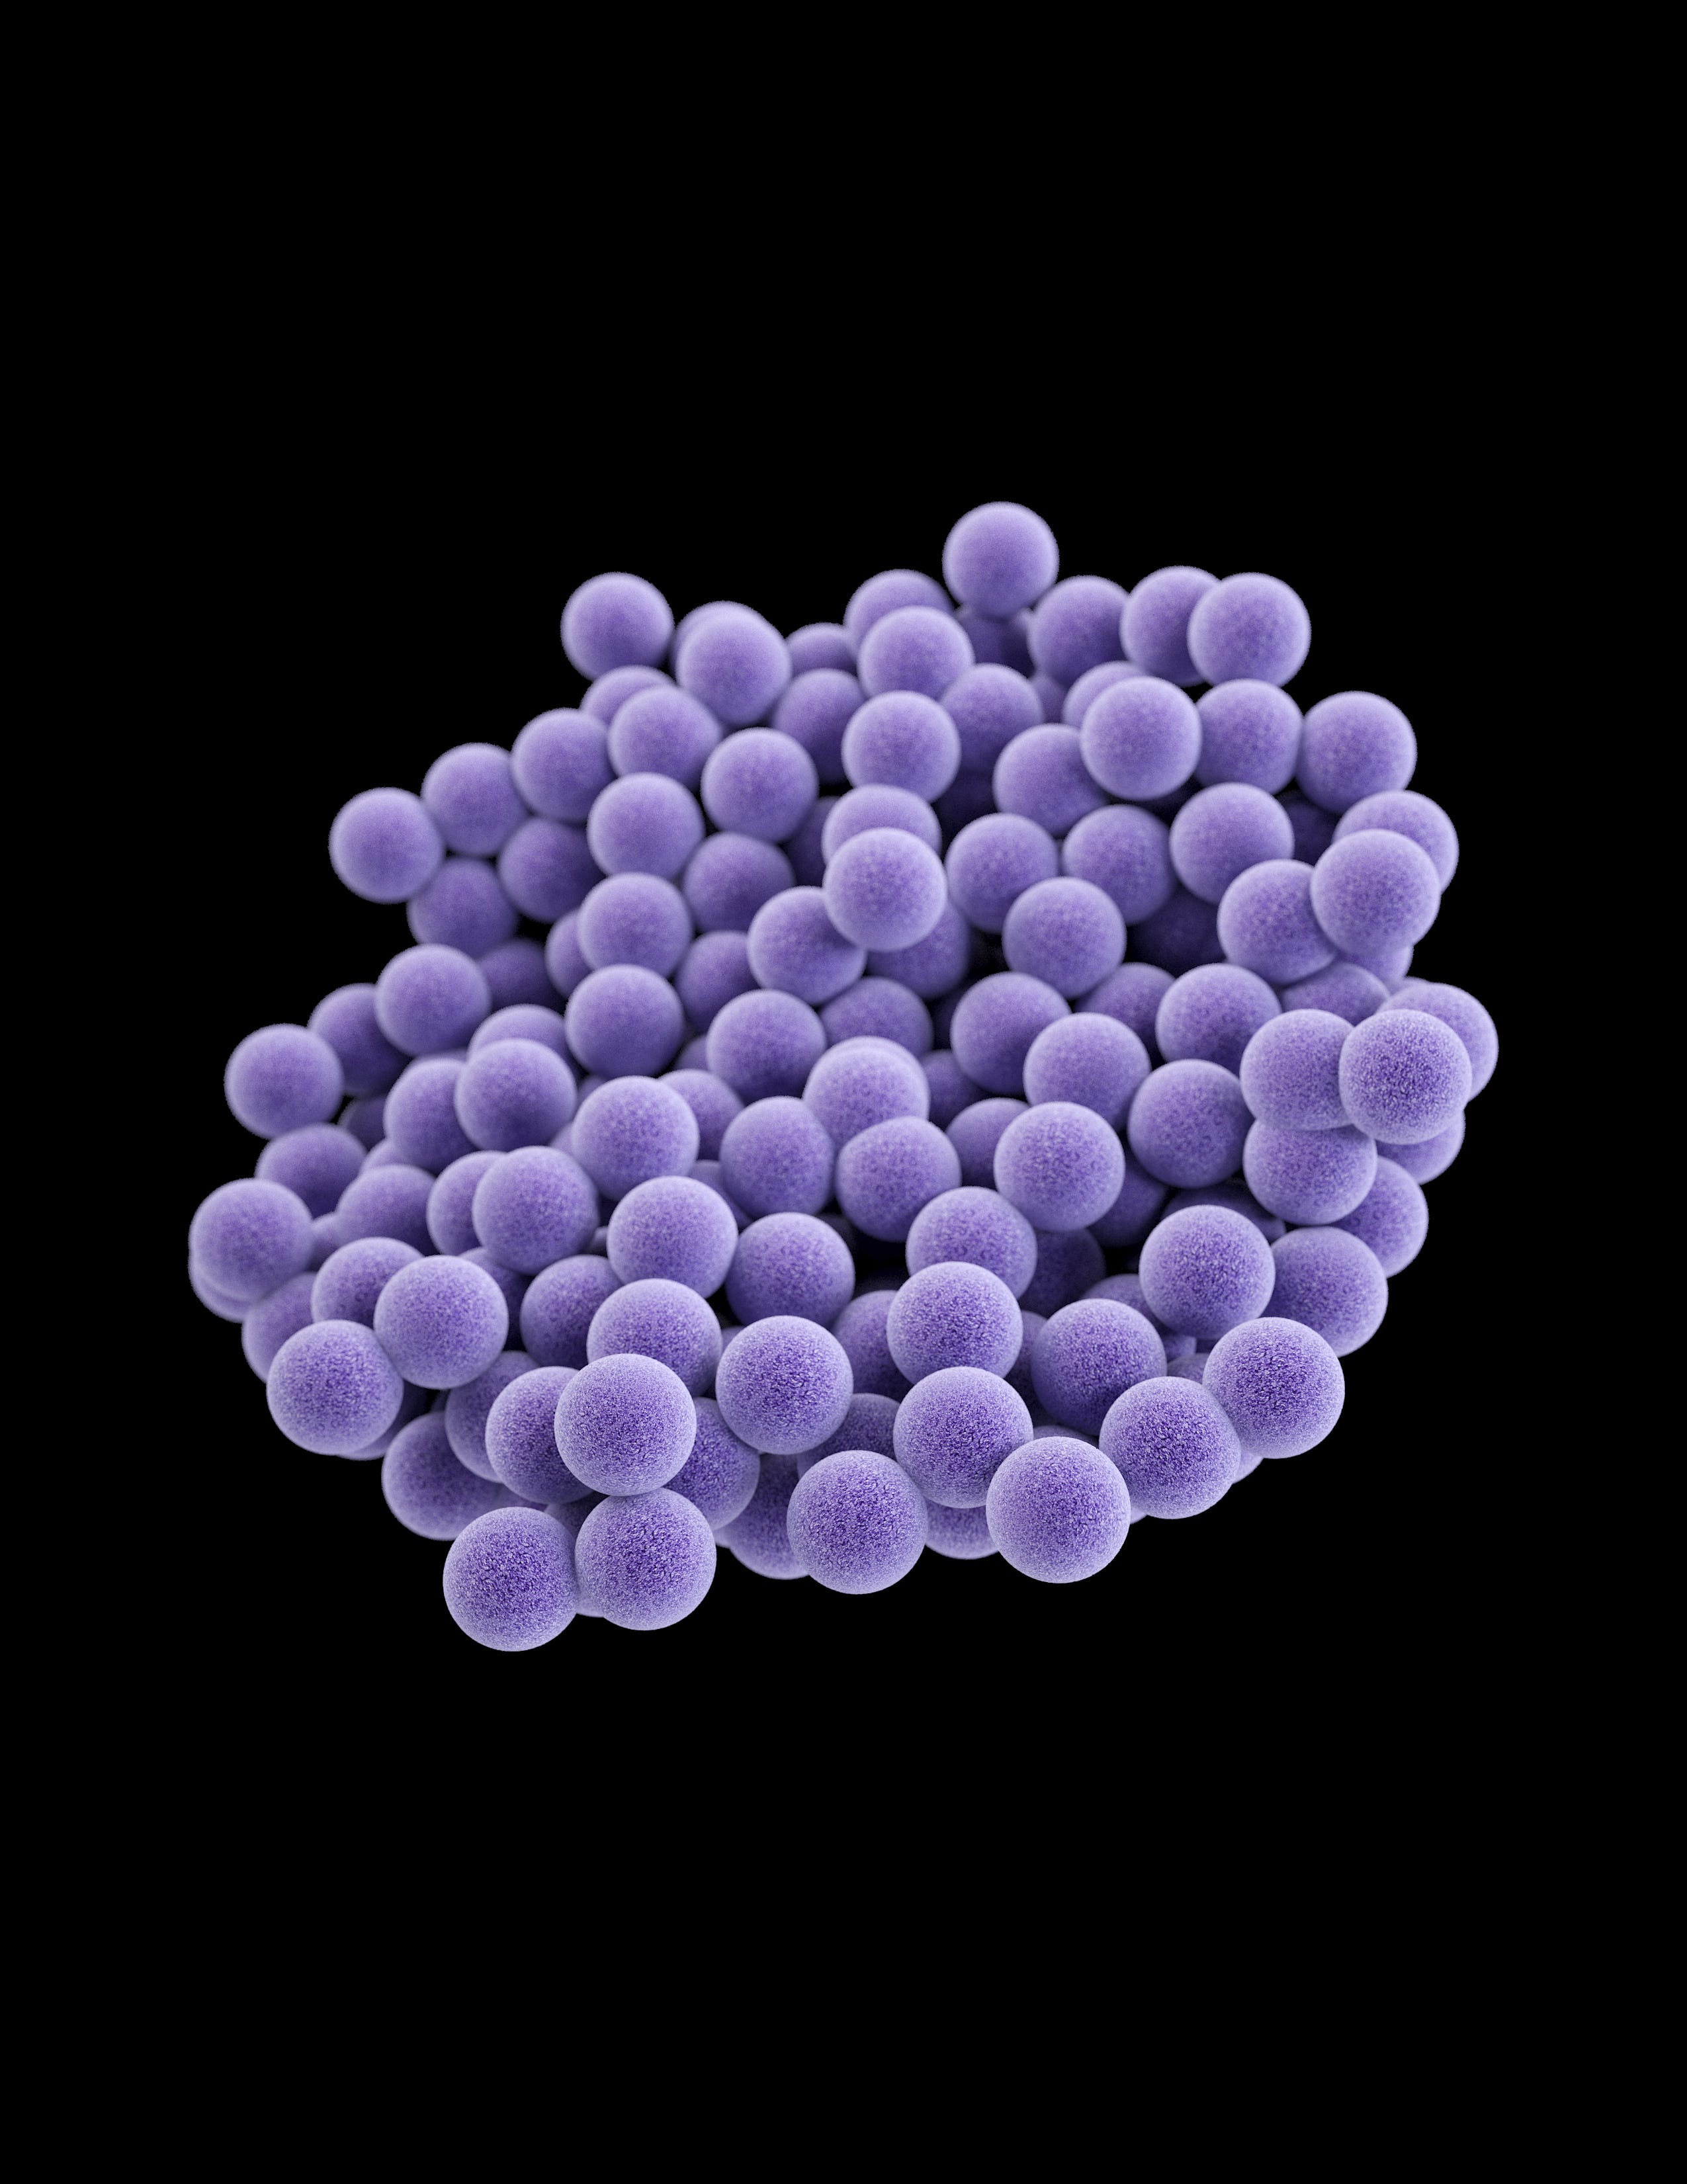 Staphylococcus aureus 3